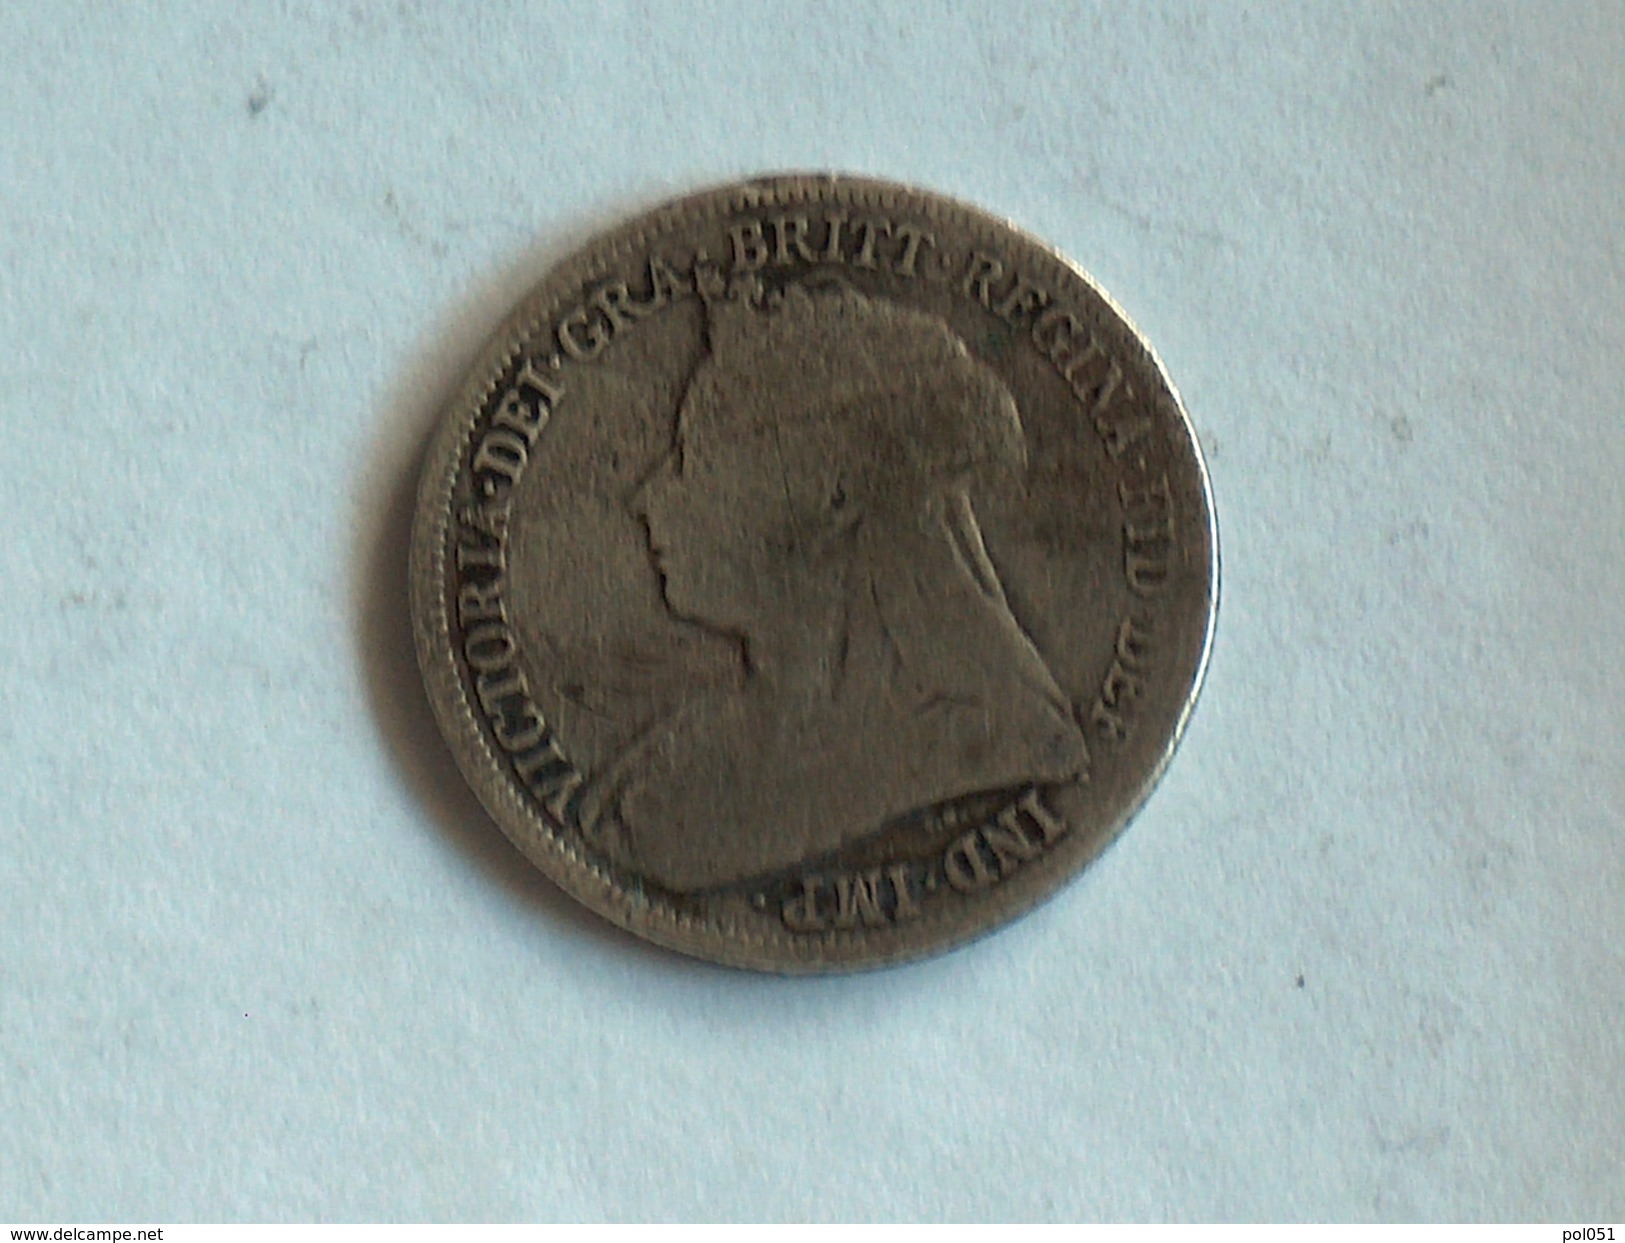 UK 1 SHILLING 1900 ONE GRANDE BRETAGNE Silver Argent - I. 1 Shilling